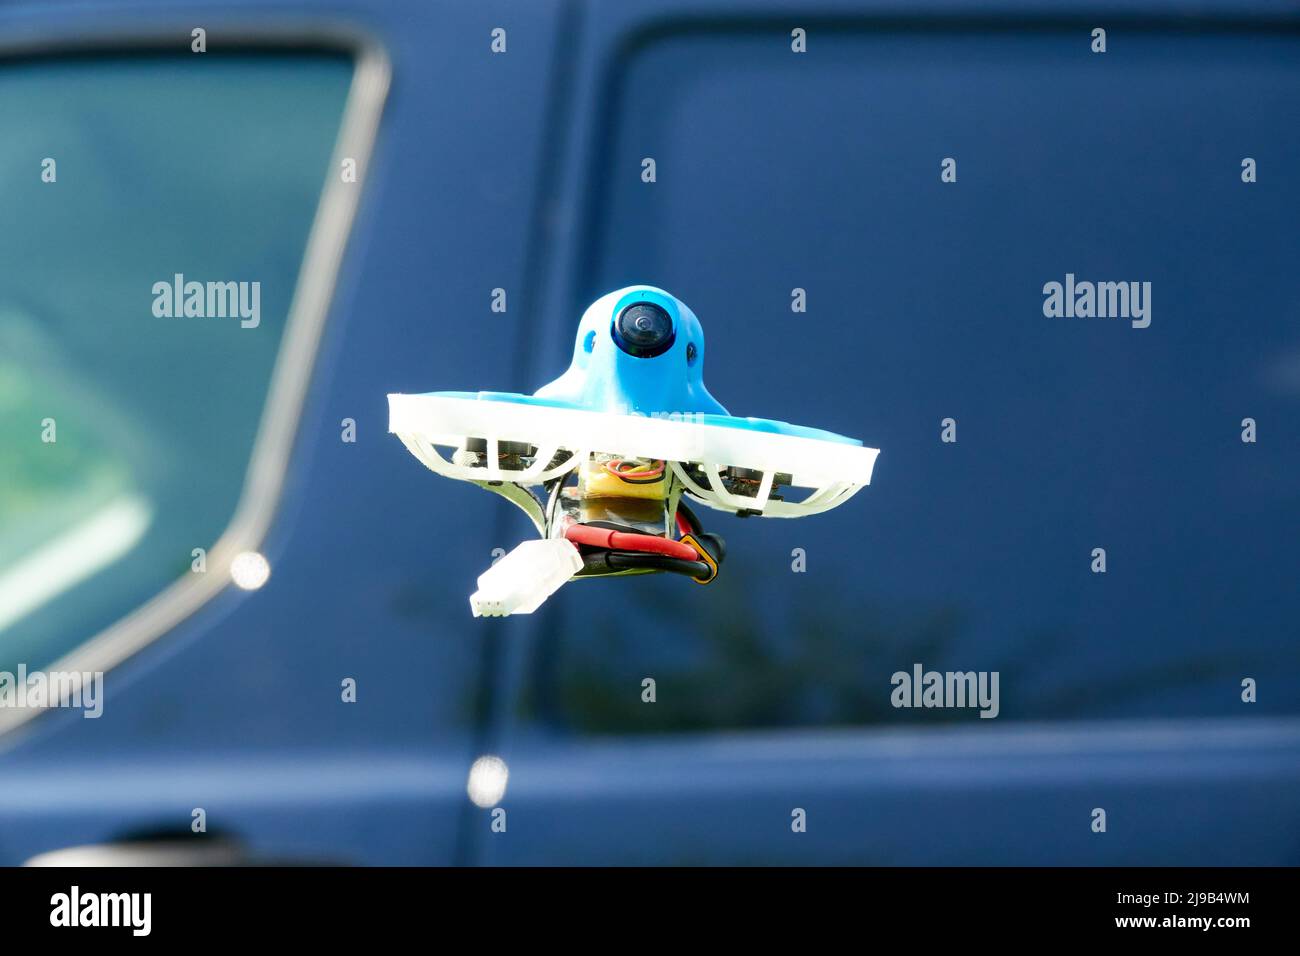 Petit bleu Drone également quad de course, avec la gondole de protection en blanc avec un ciel bleu, une voiture bleue en arrière-plan. Photographié d'en dessous. Allemagne. Banque D'Images